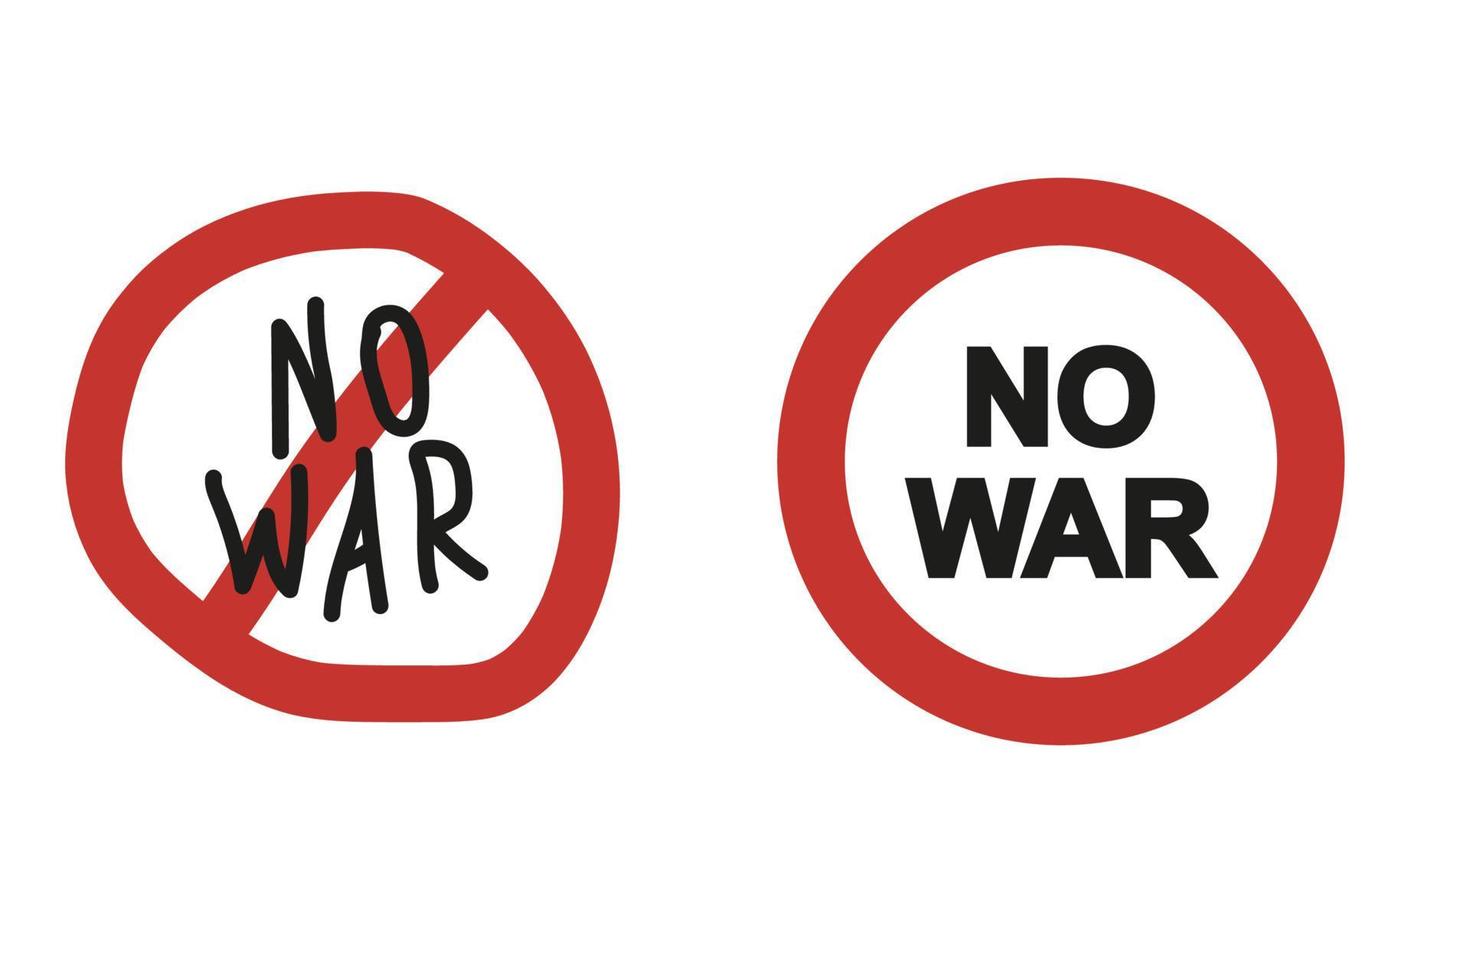 No war icon. Vector illustration